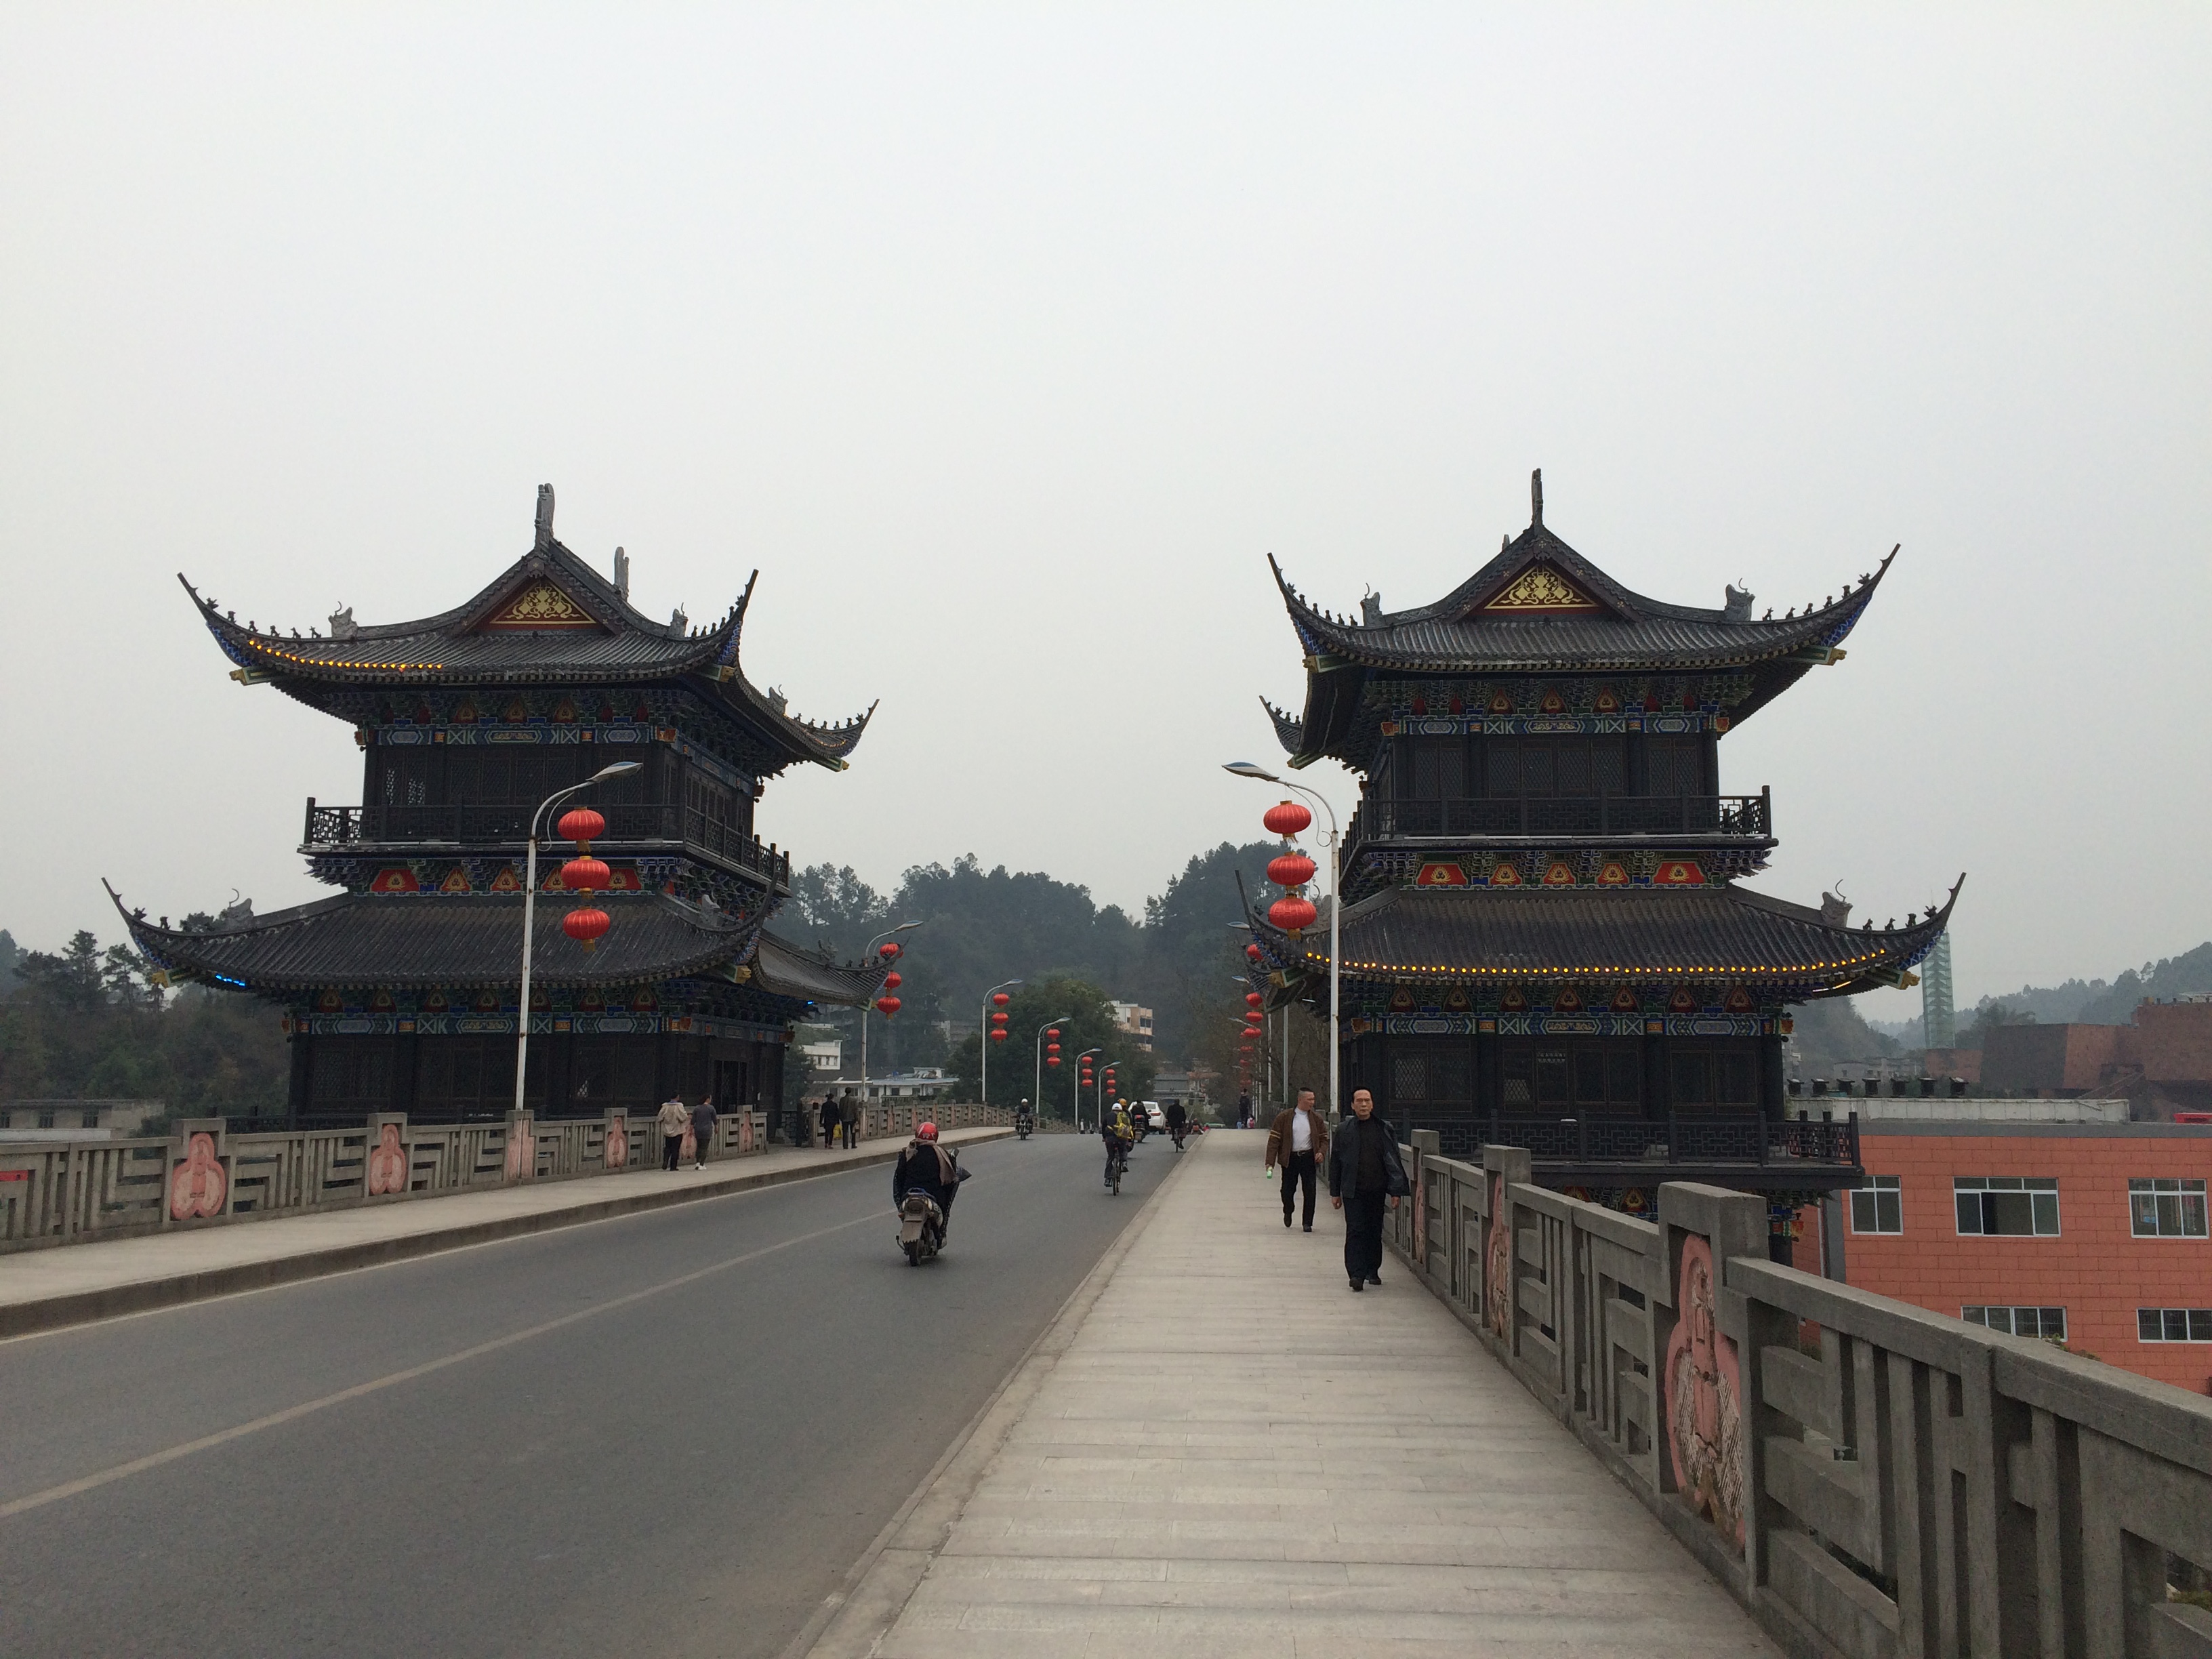 乐山岷江大桥